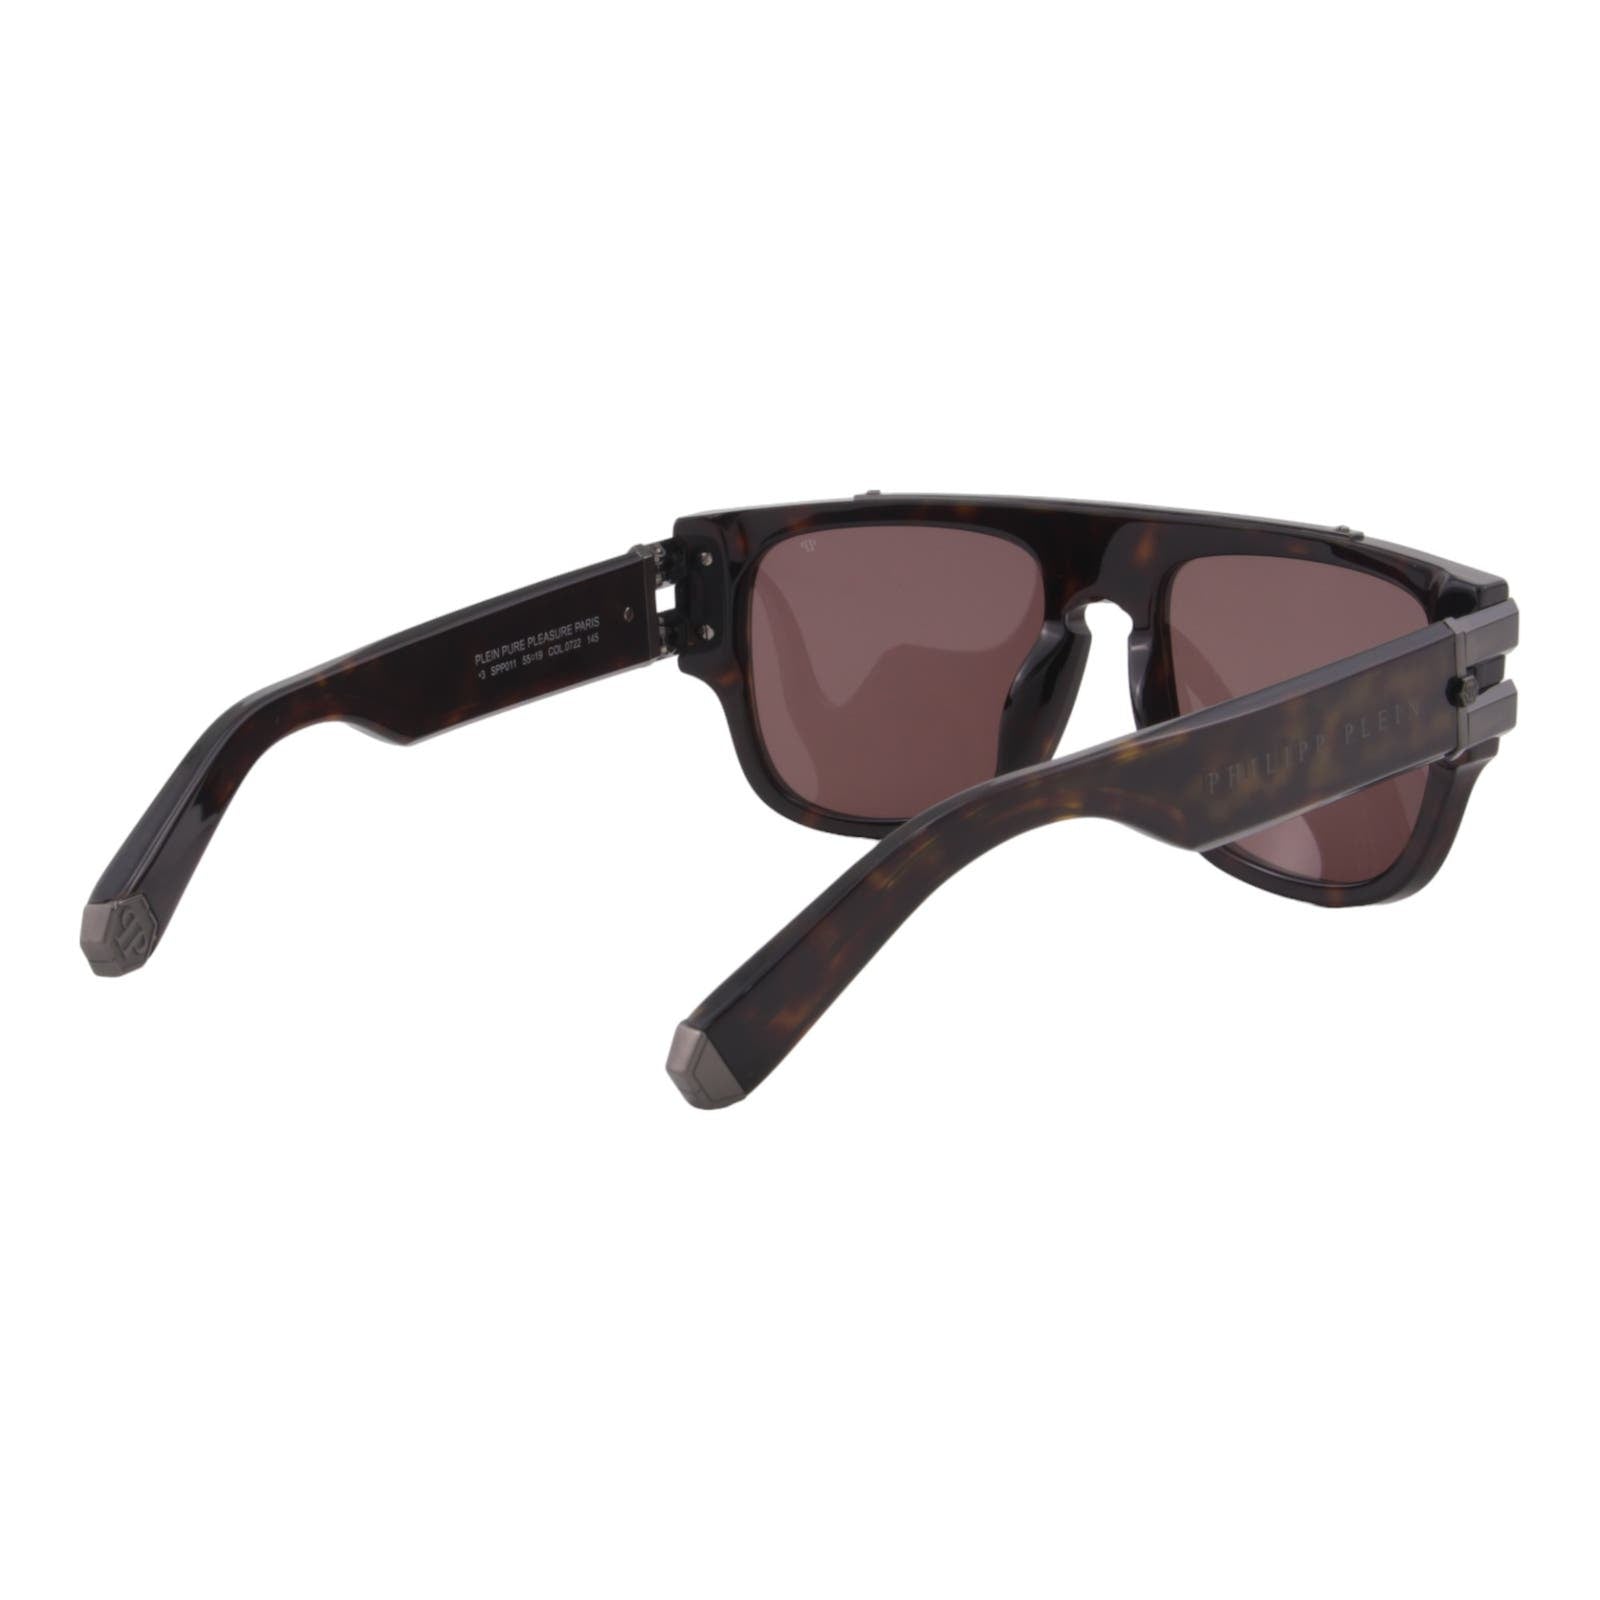 Men Titanium Square Sunglasses SPP011M-0722 Havana Brown & Gunmetal